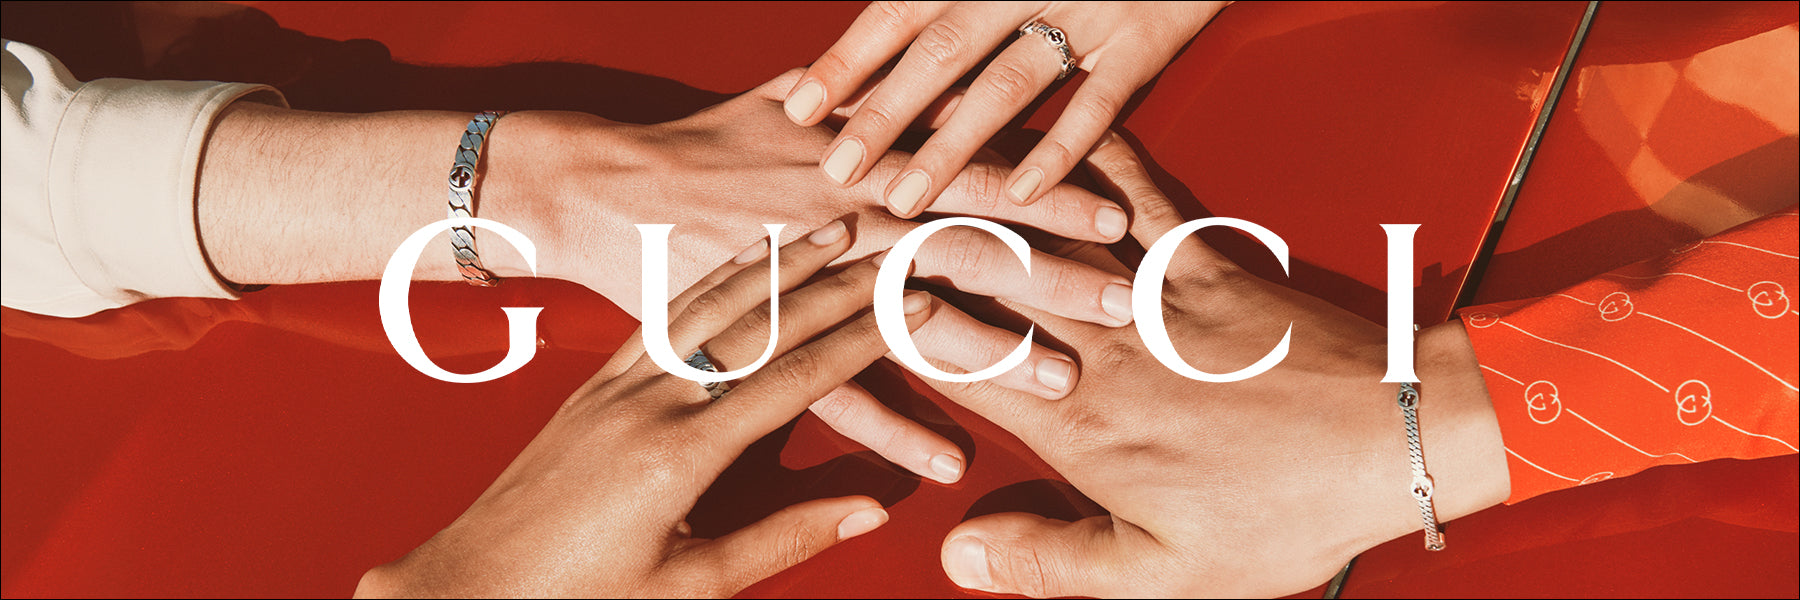 Gucci Silver Bracelets Image